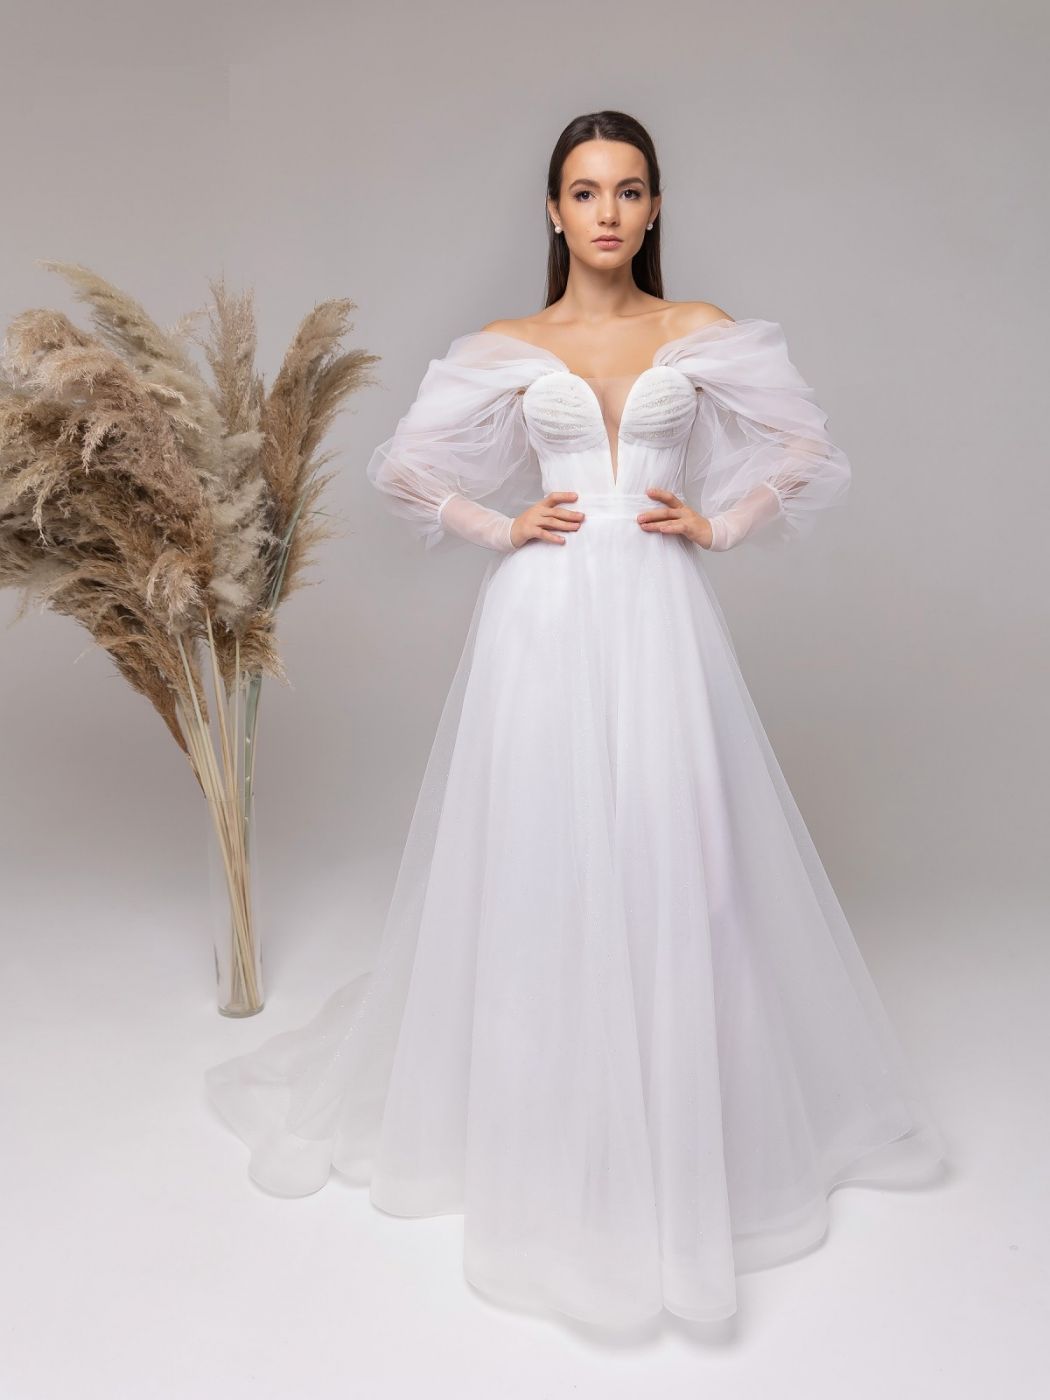 Воздушное мерцающее свадебное платье "А-силуэт" из фатина Арт. 590